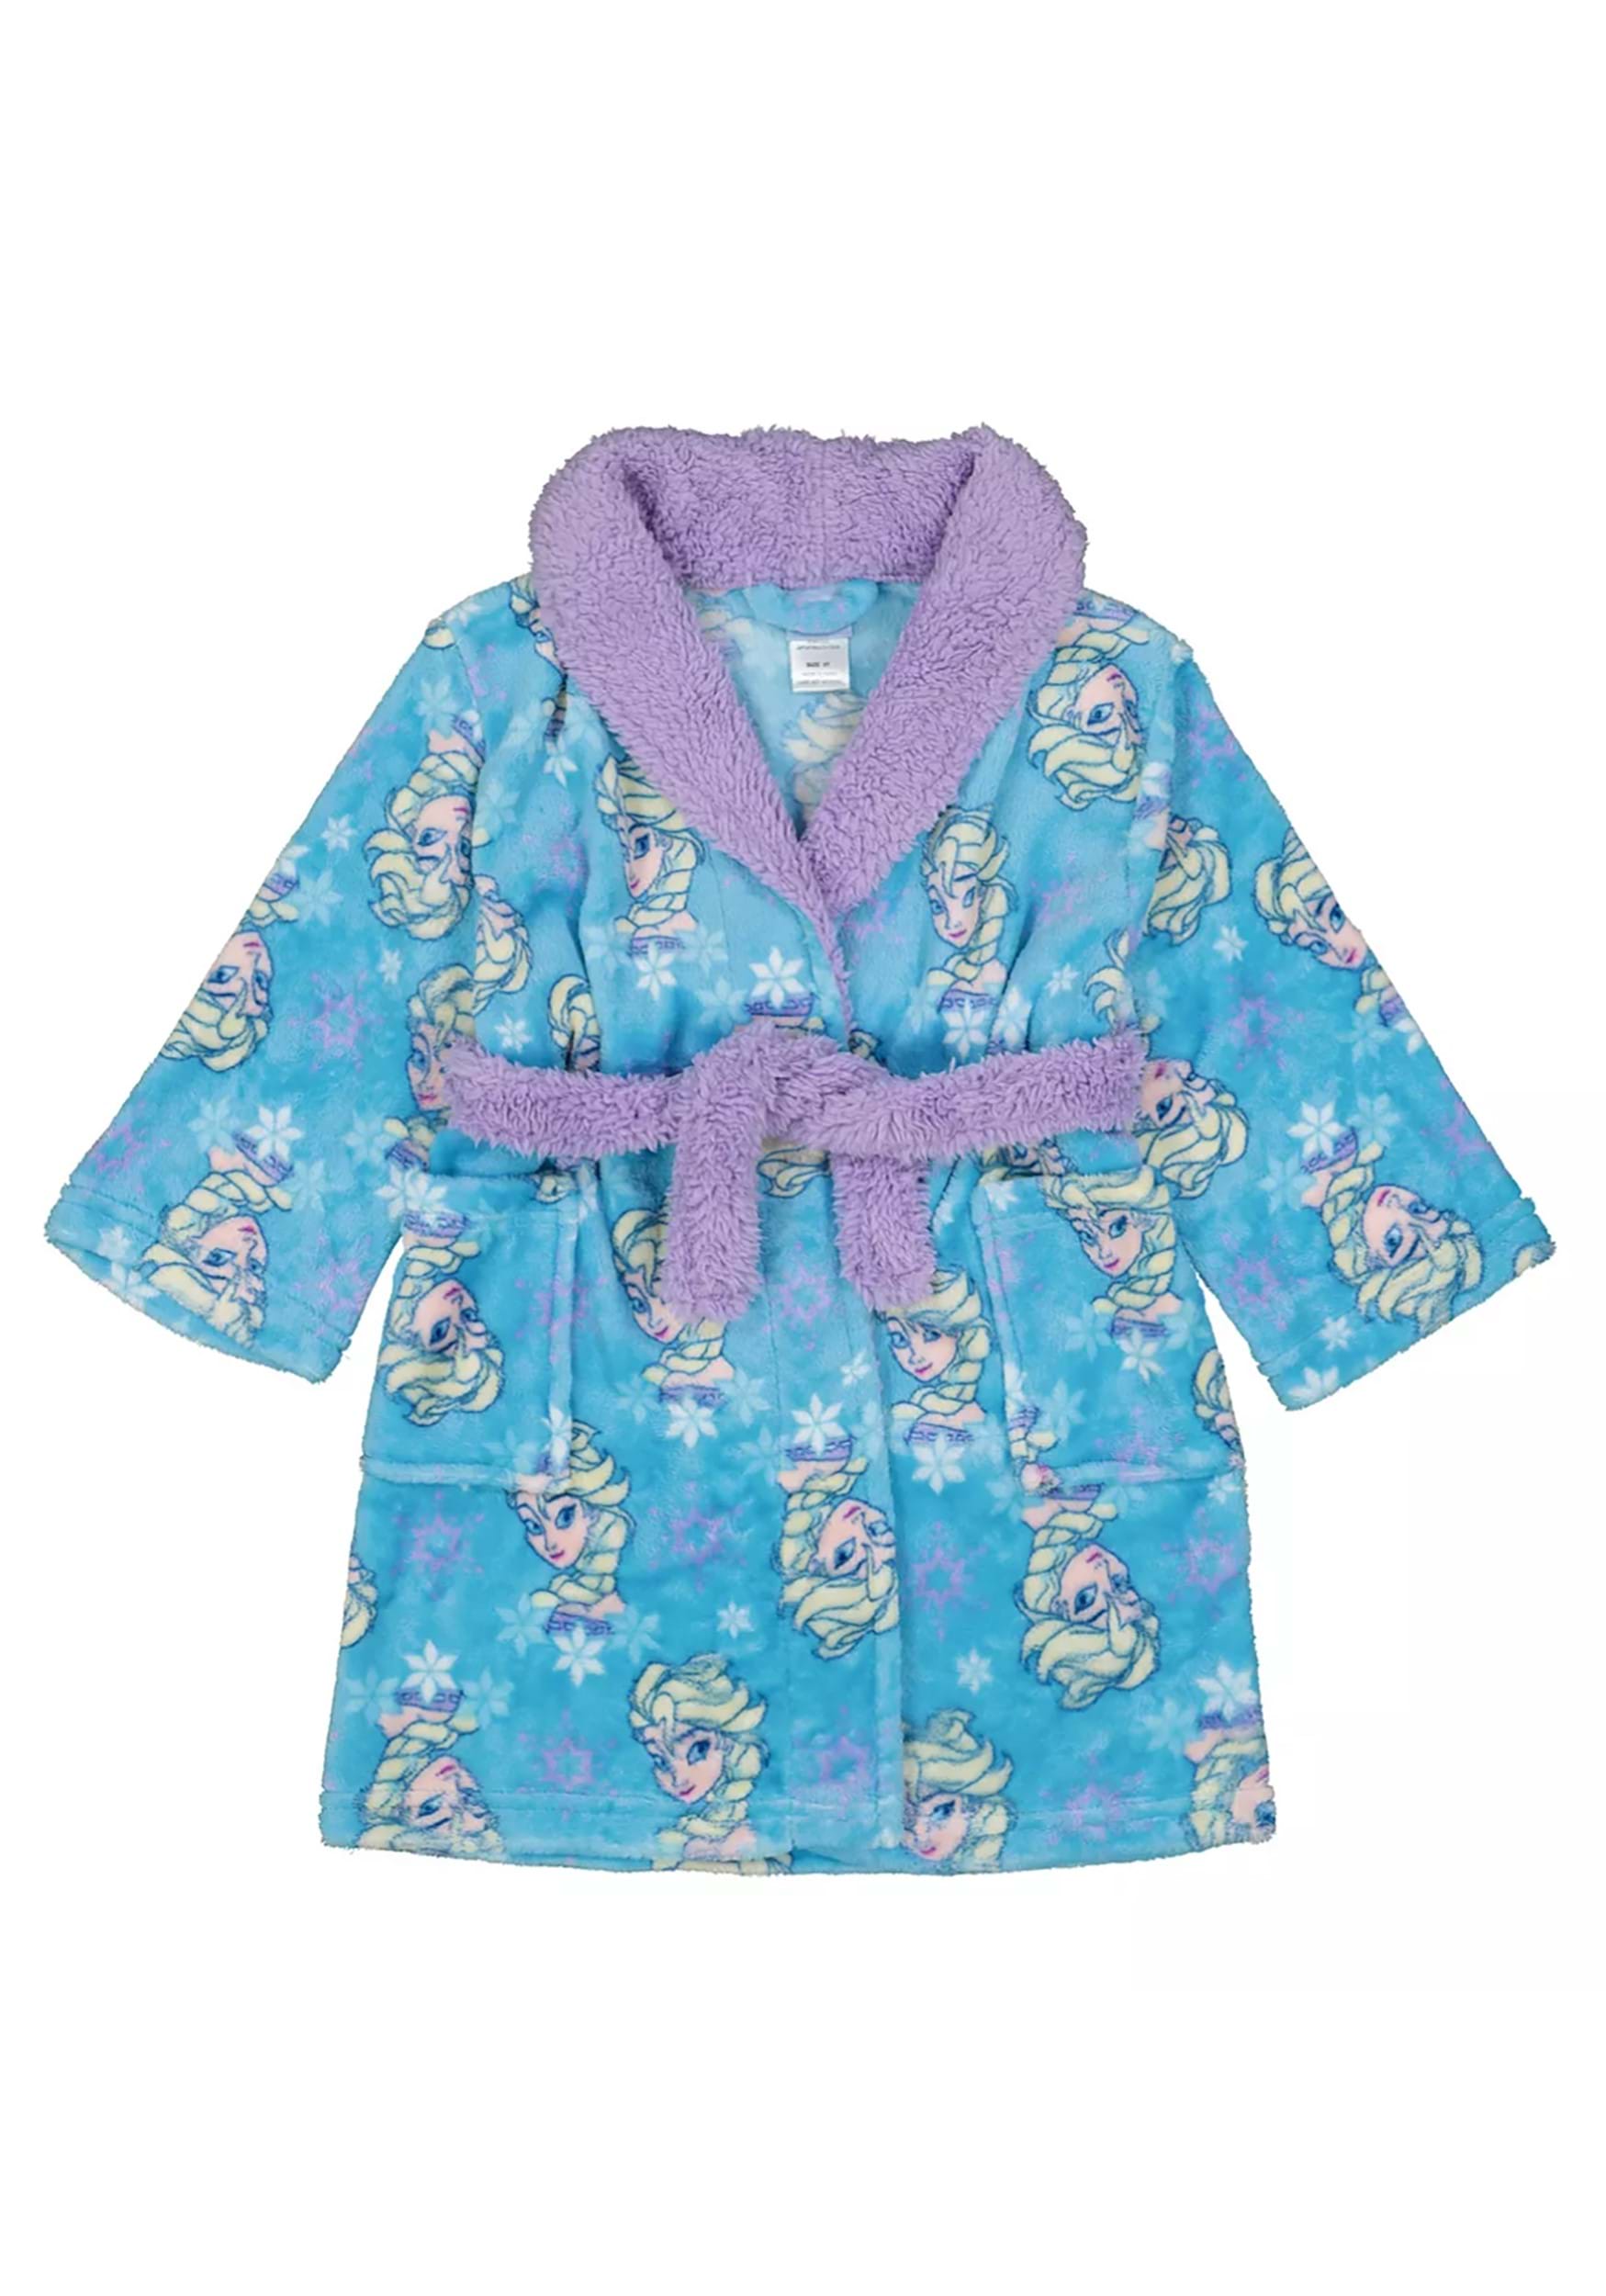 Toddler Frozen Magic Robe for Girls